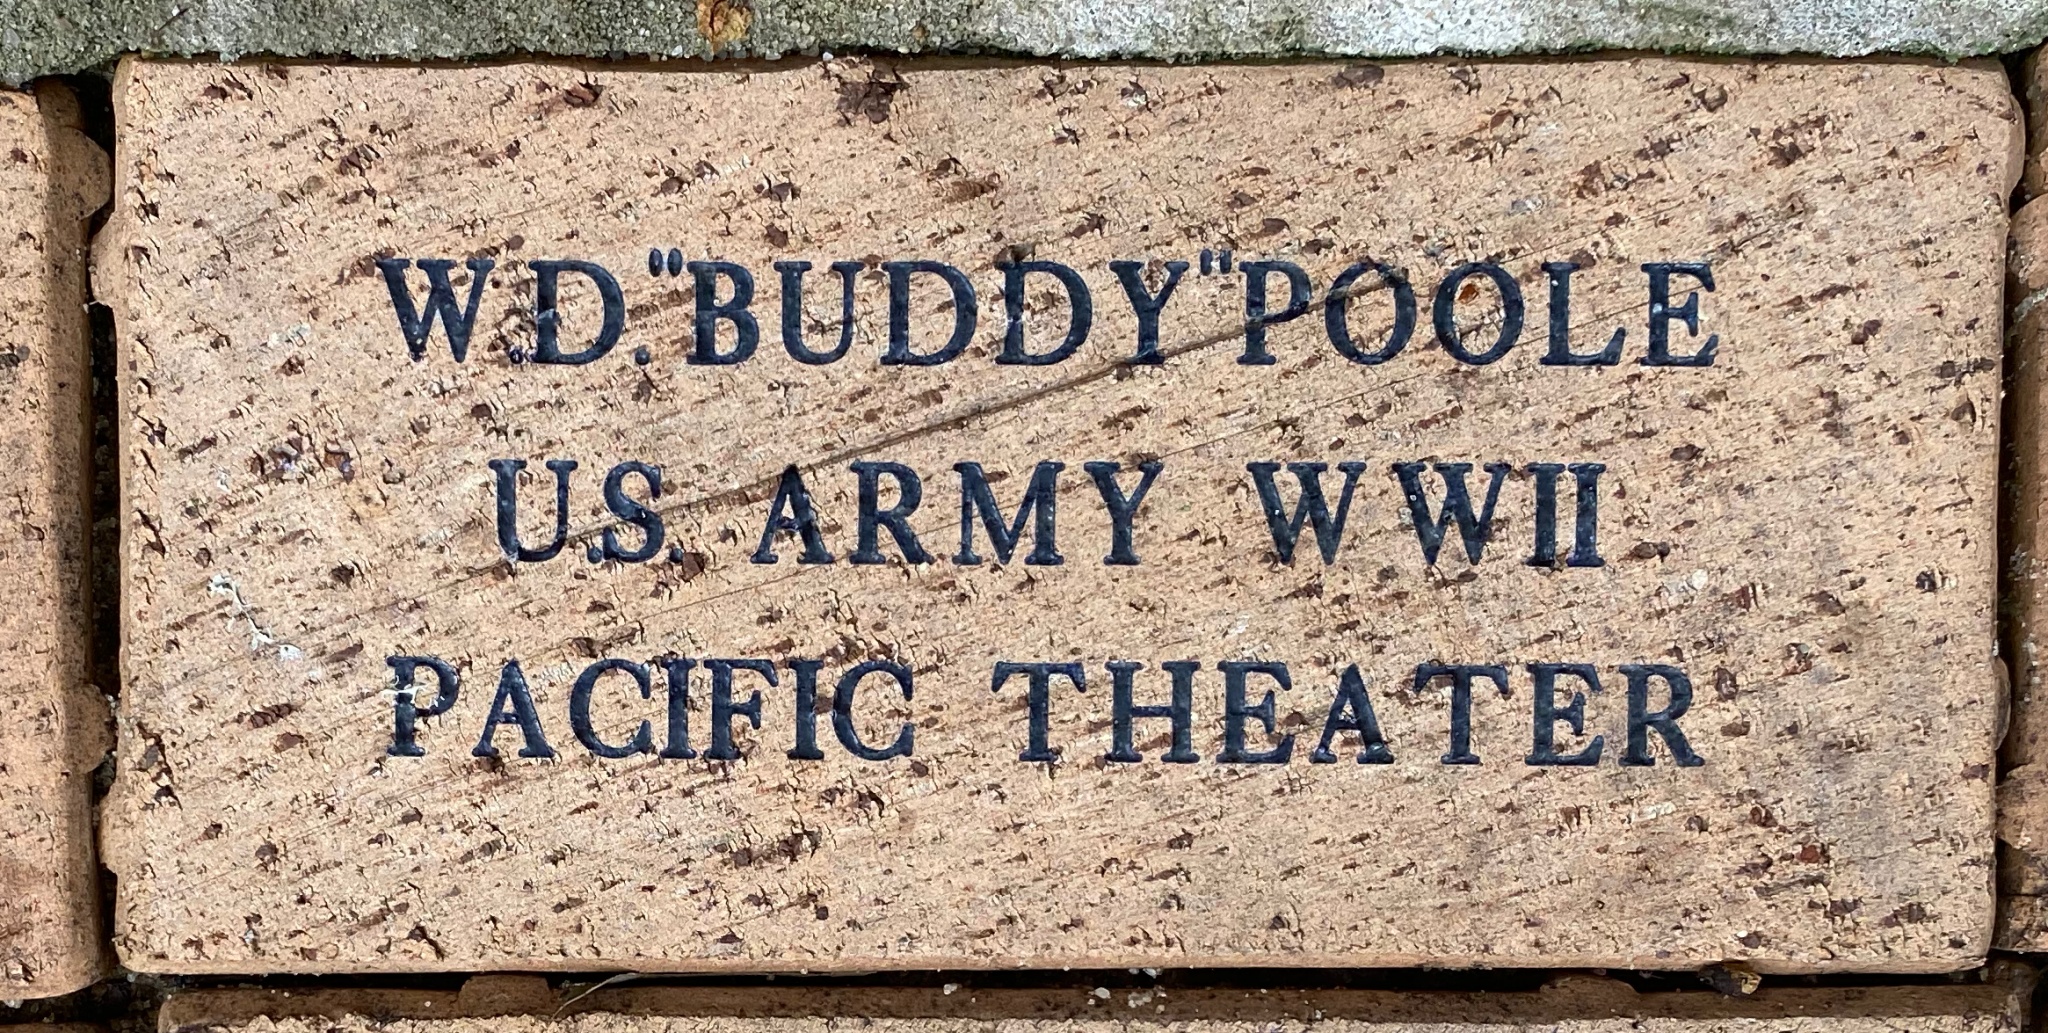 W.D.”BUDDY “POOLE U.S. ARMY WWII PACIFIC THEATER